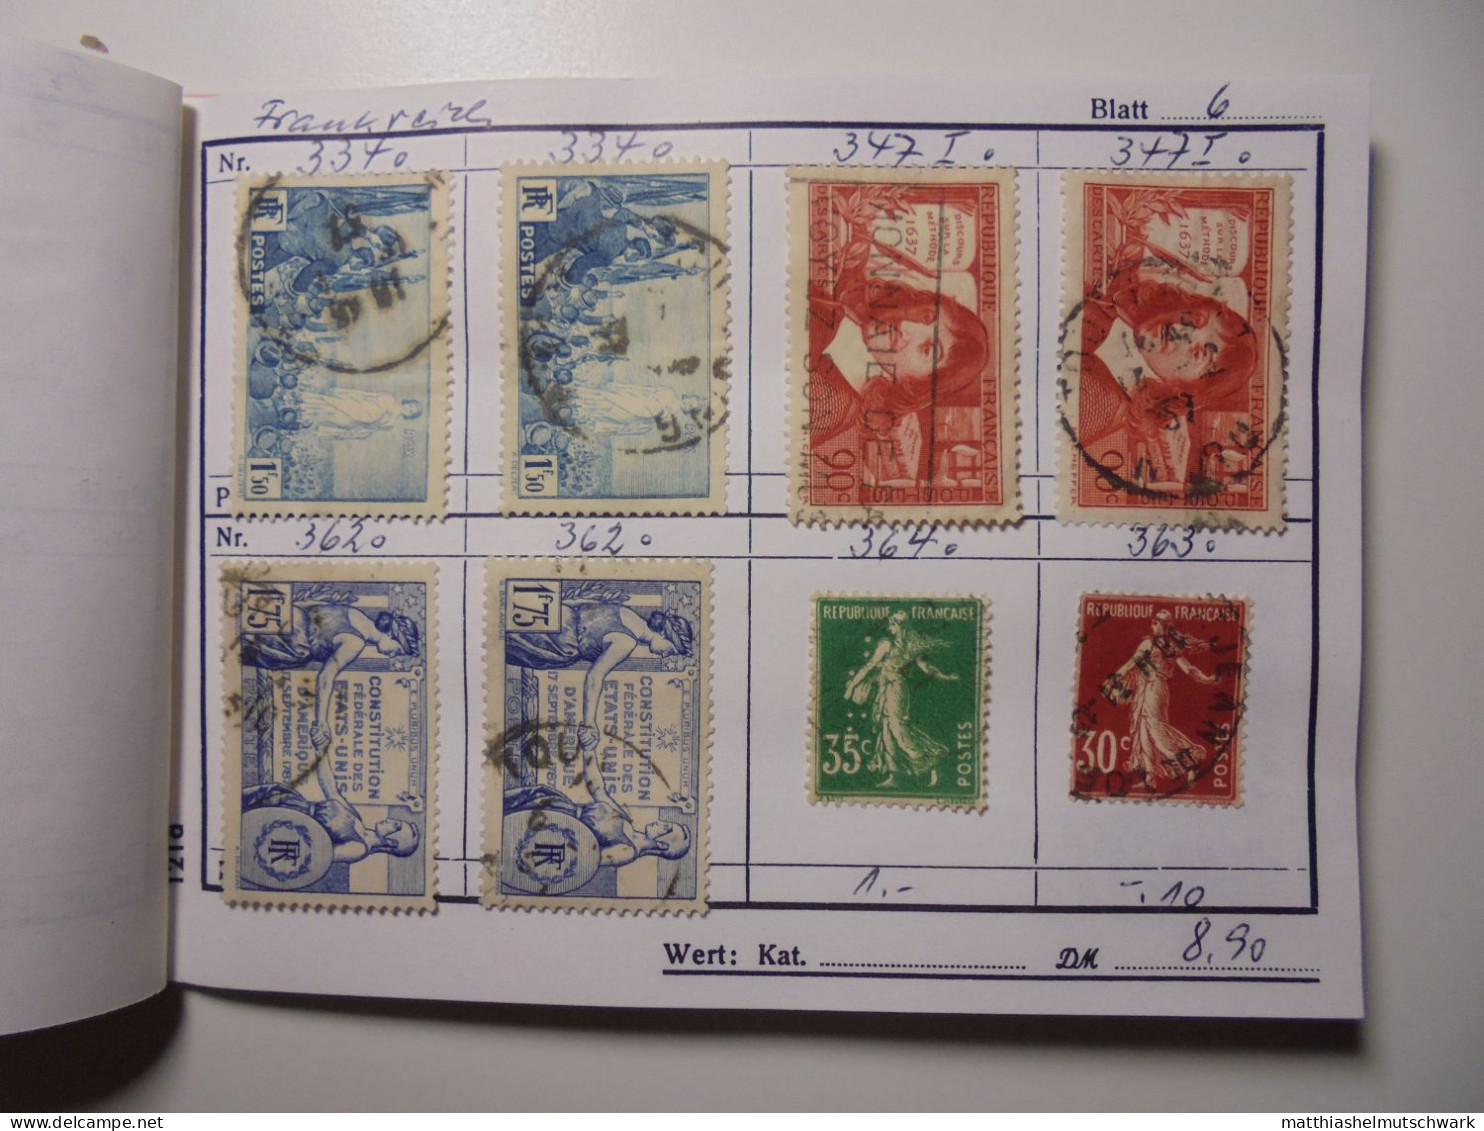 Auswahlheft Nr. 443 20 Blätter 157 Briefmarken  Frankreich 1936-1951/Mi Nr. 315-904, unvollständig Ca.